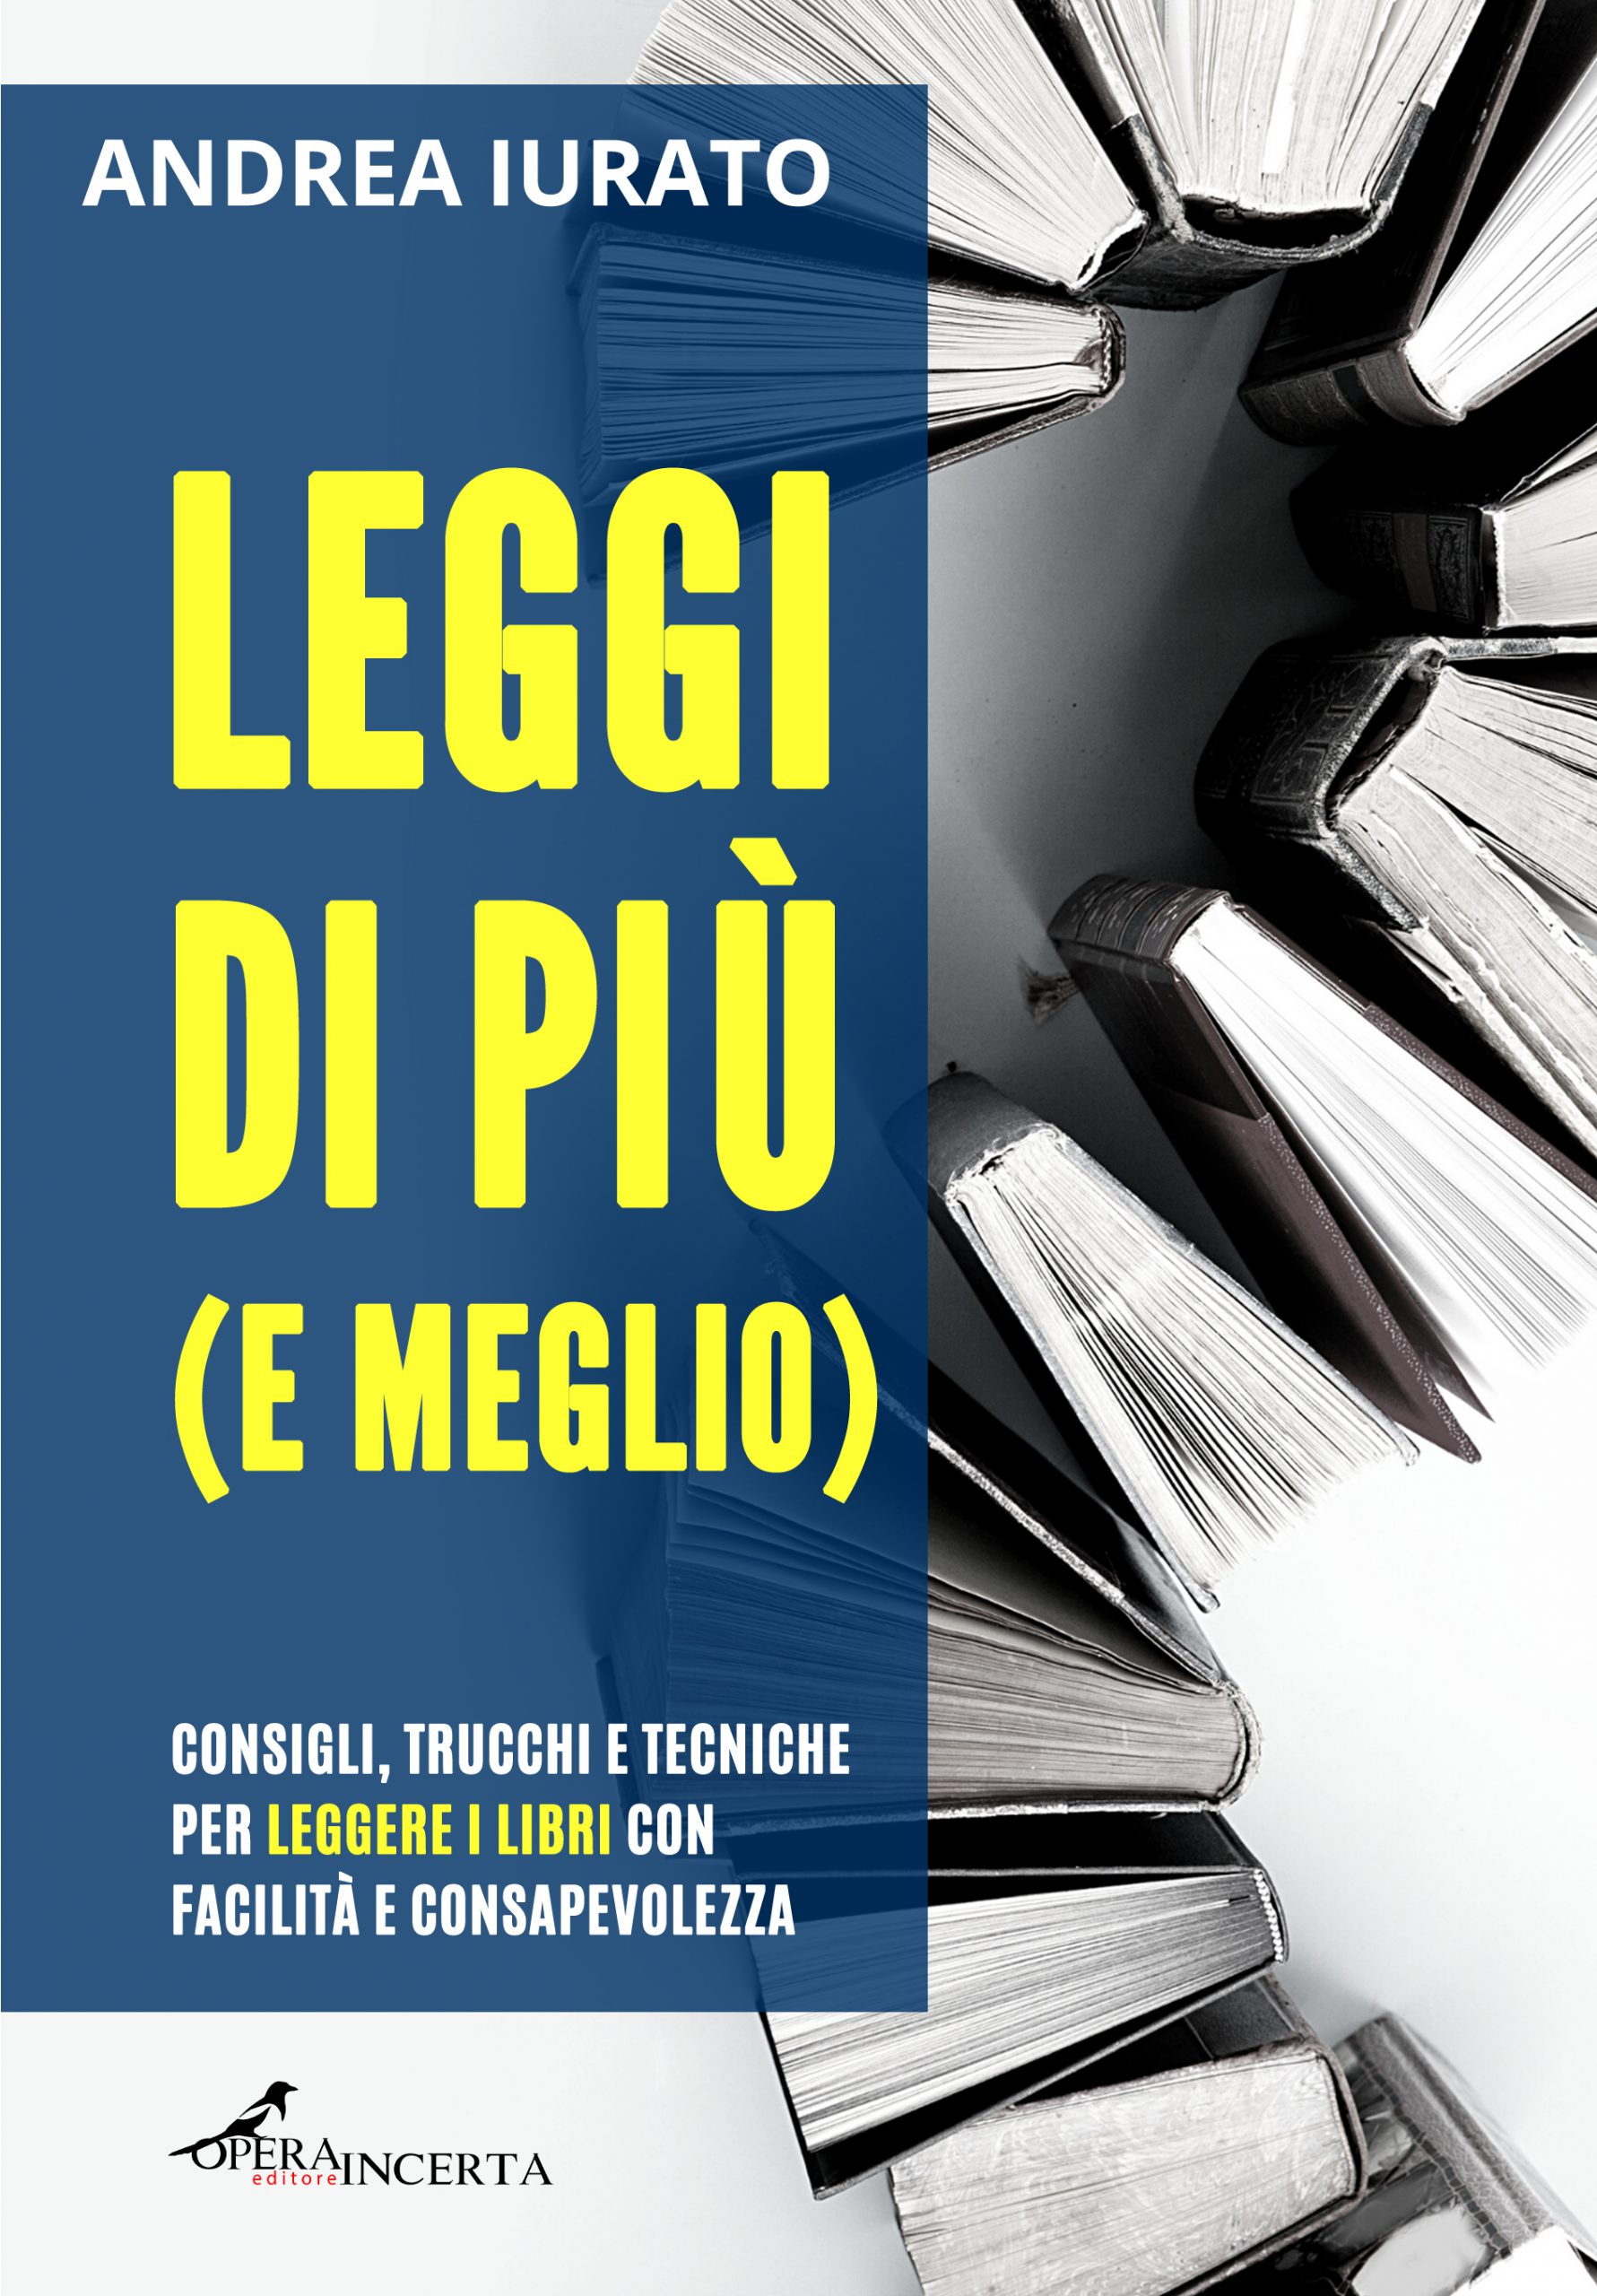 "Leggi di più (e meglio)" - Presentazione del volume di Andrea Iurato @ Palazzo Garofalo